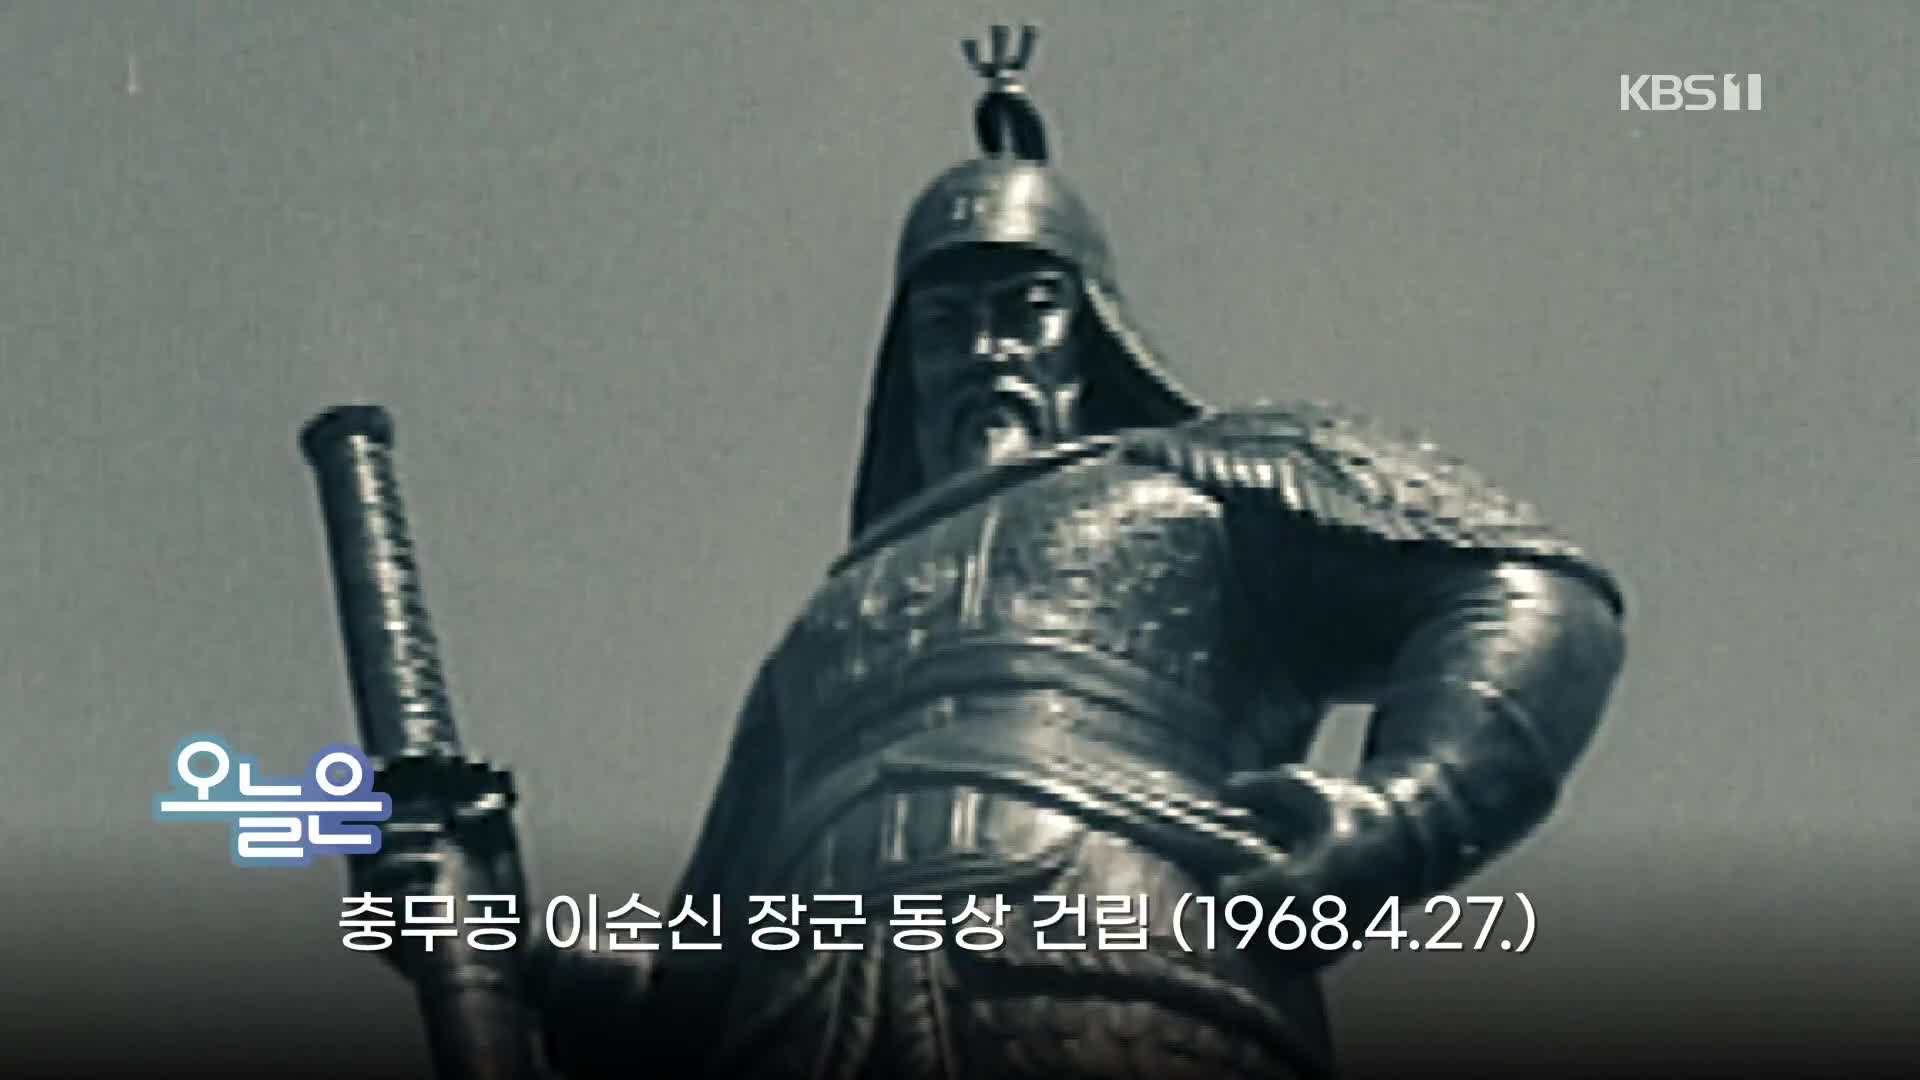 [오늘은] 충무공 이순신 장군 동상 건립 (1968.4.27.)